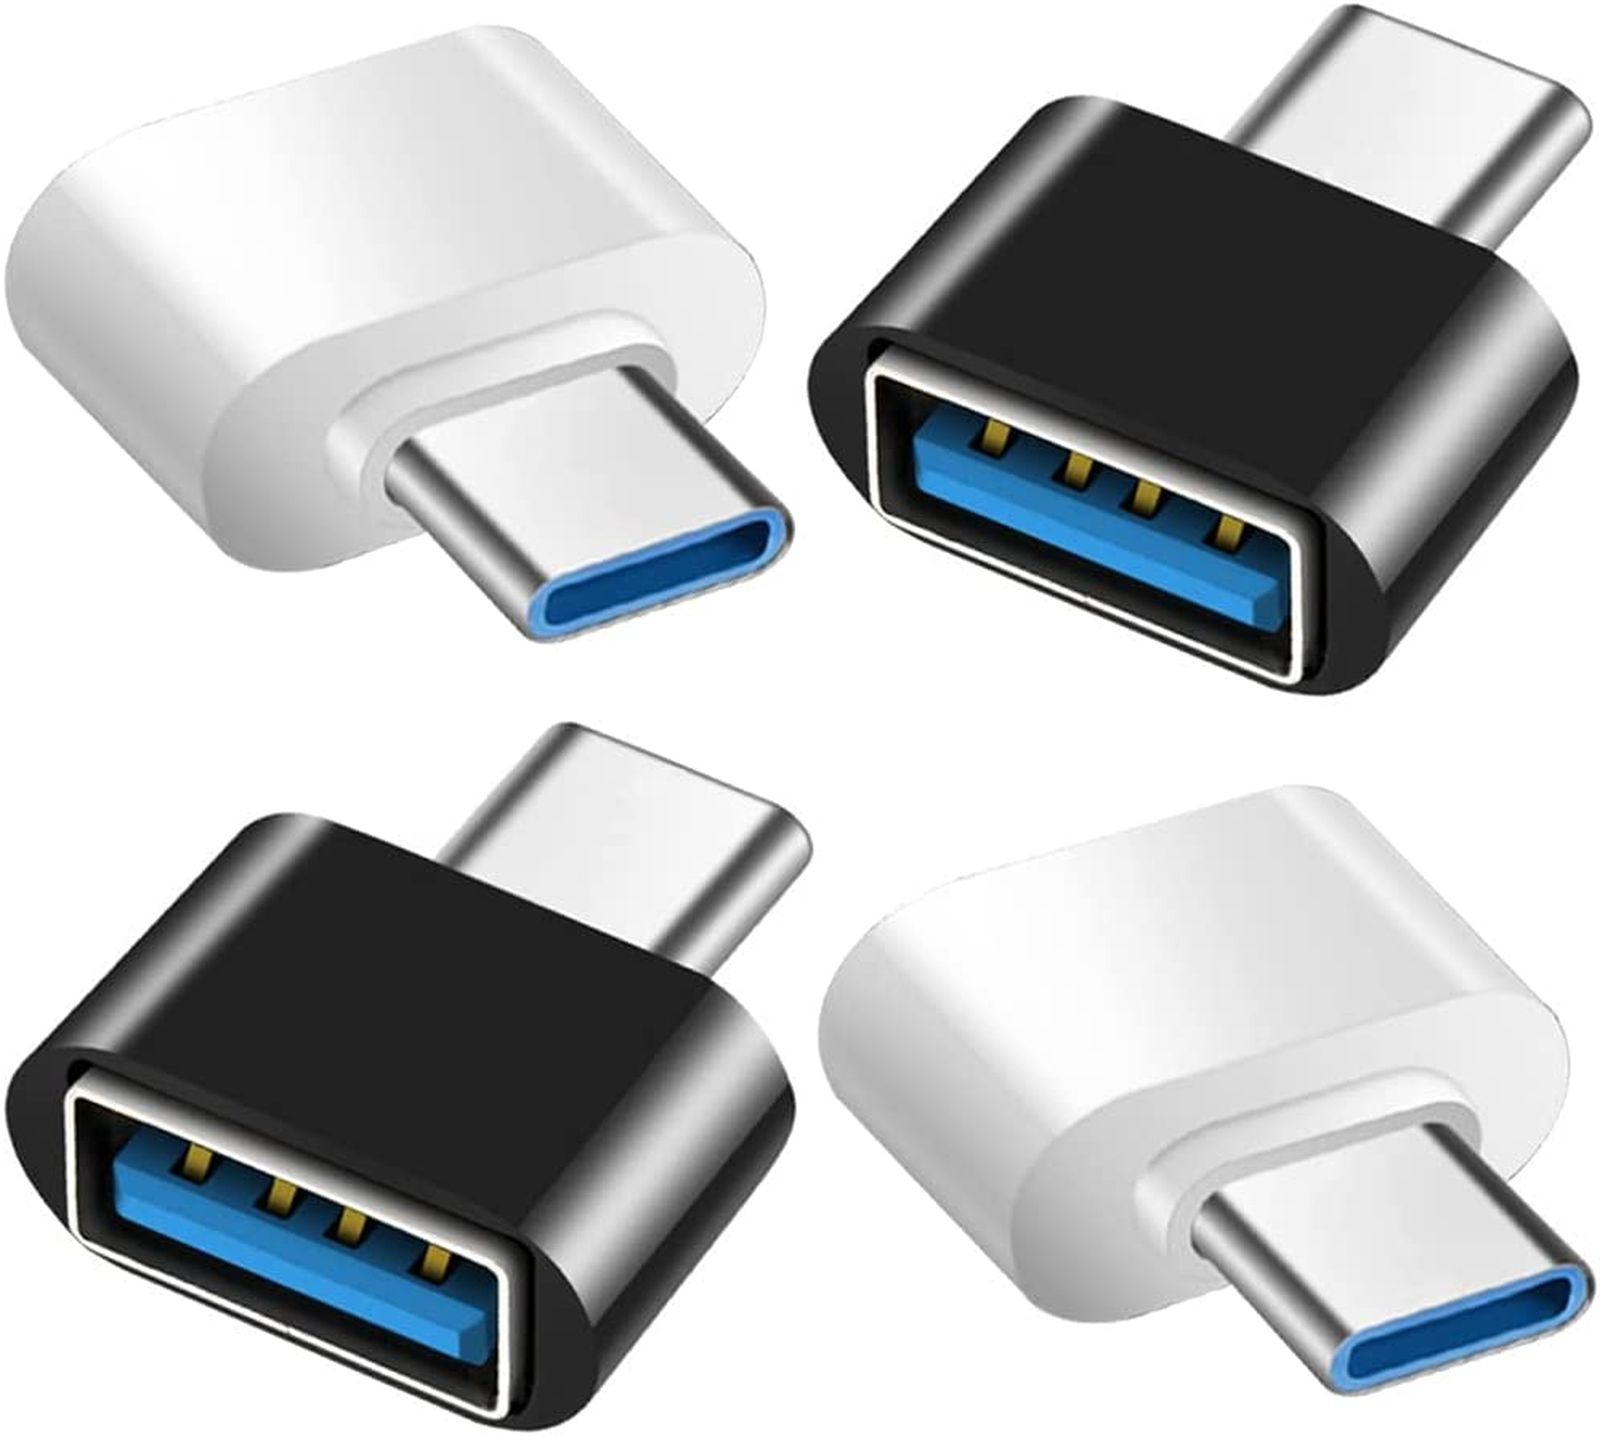 Come scegliere cavi e adattatori per le porte USB-C e Thunderbolt 3